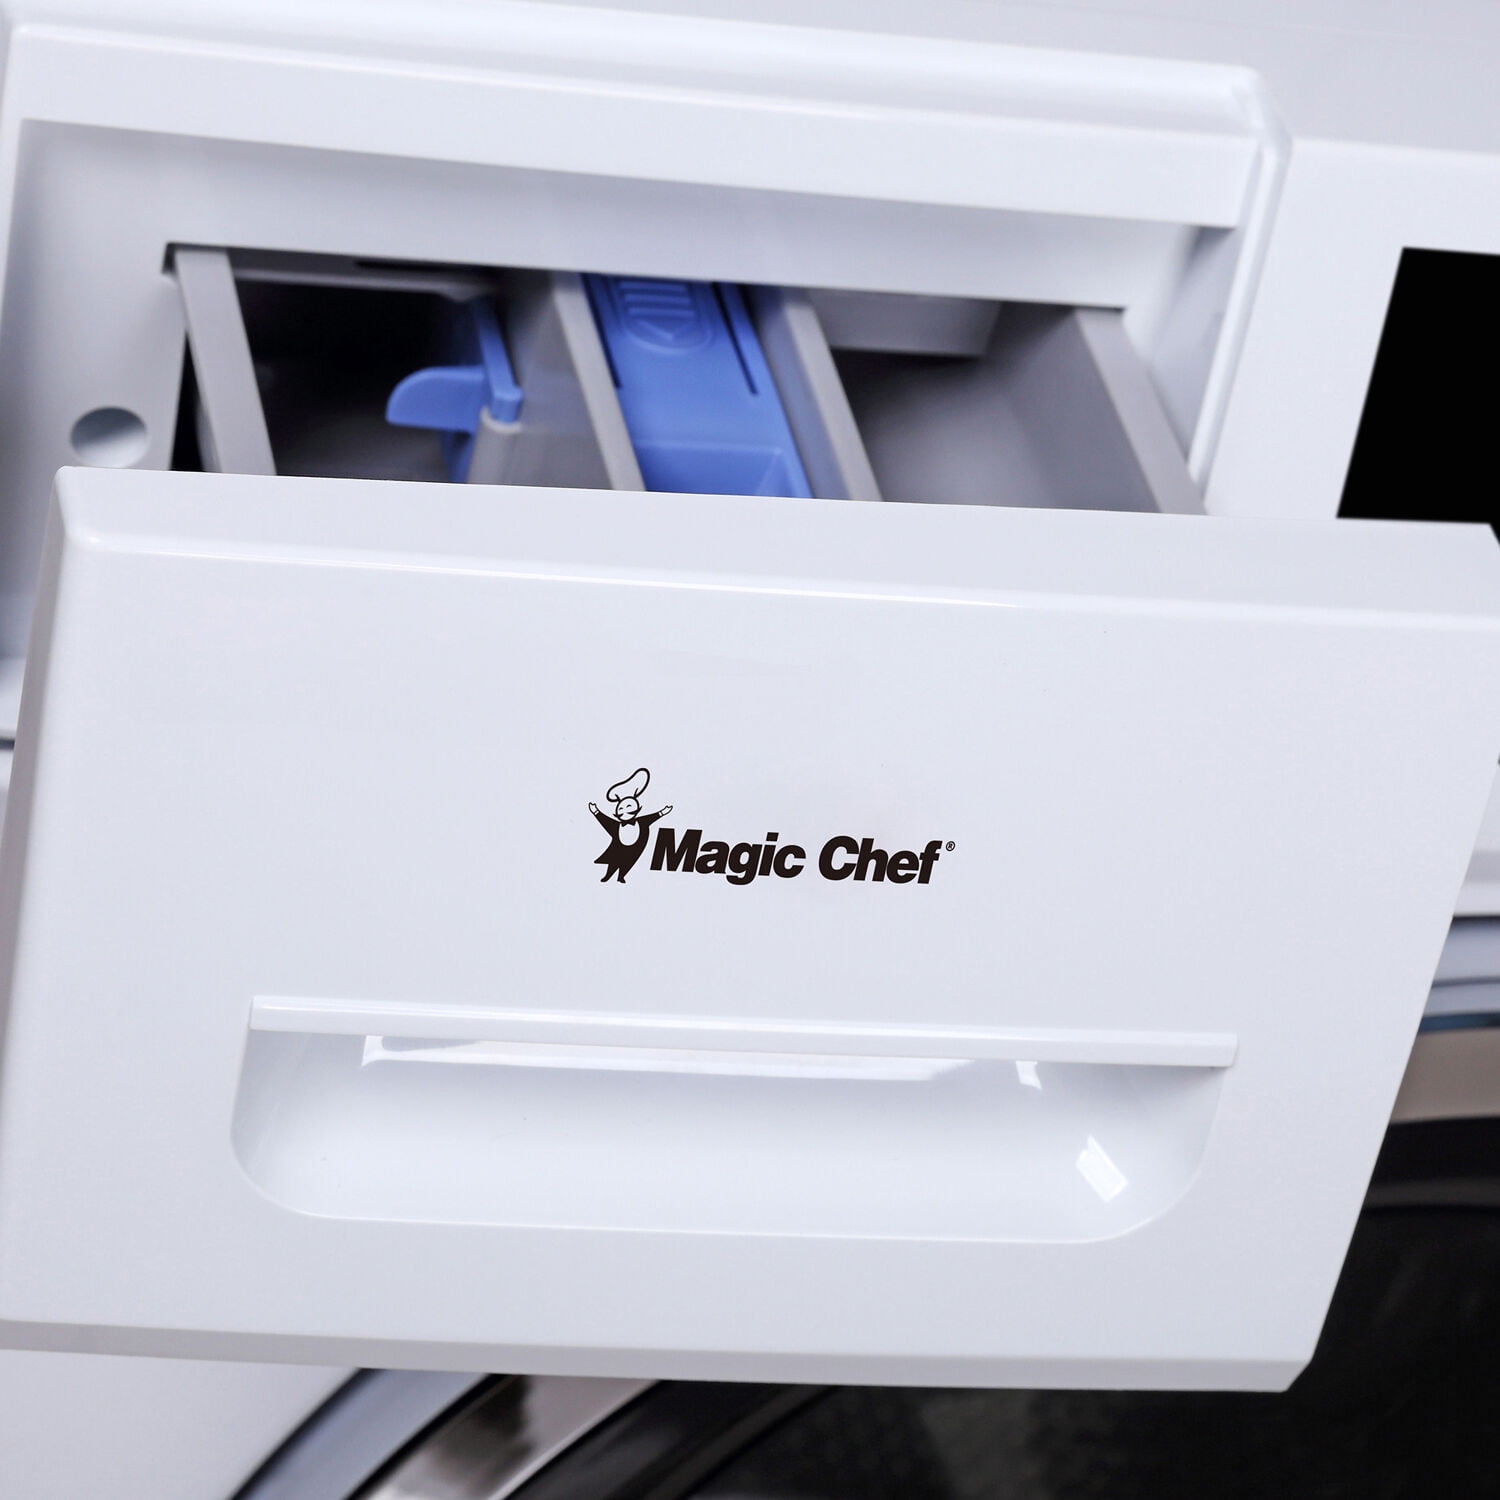 lavadora magic chef｜TikTok Search